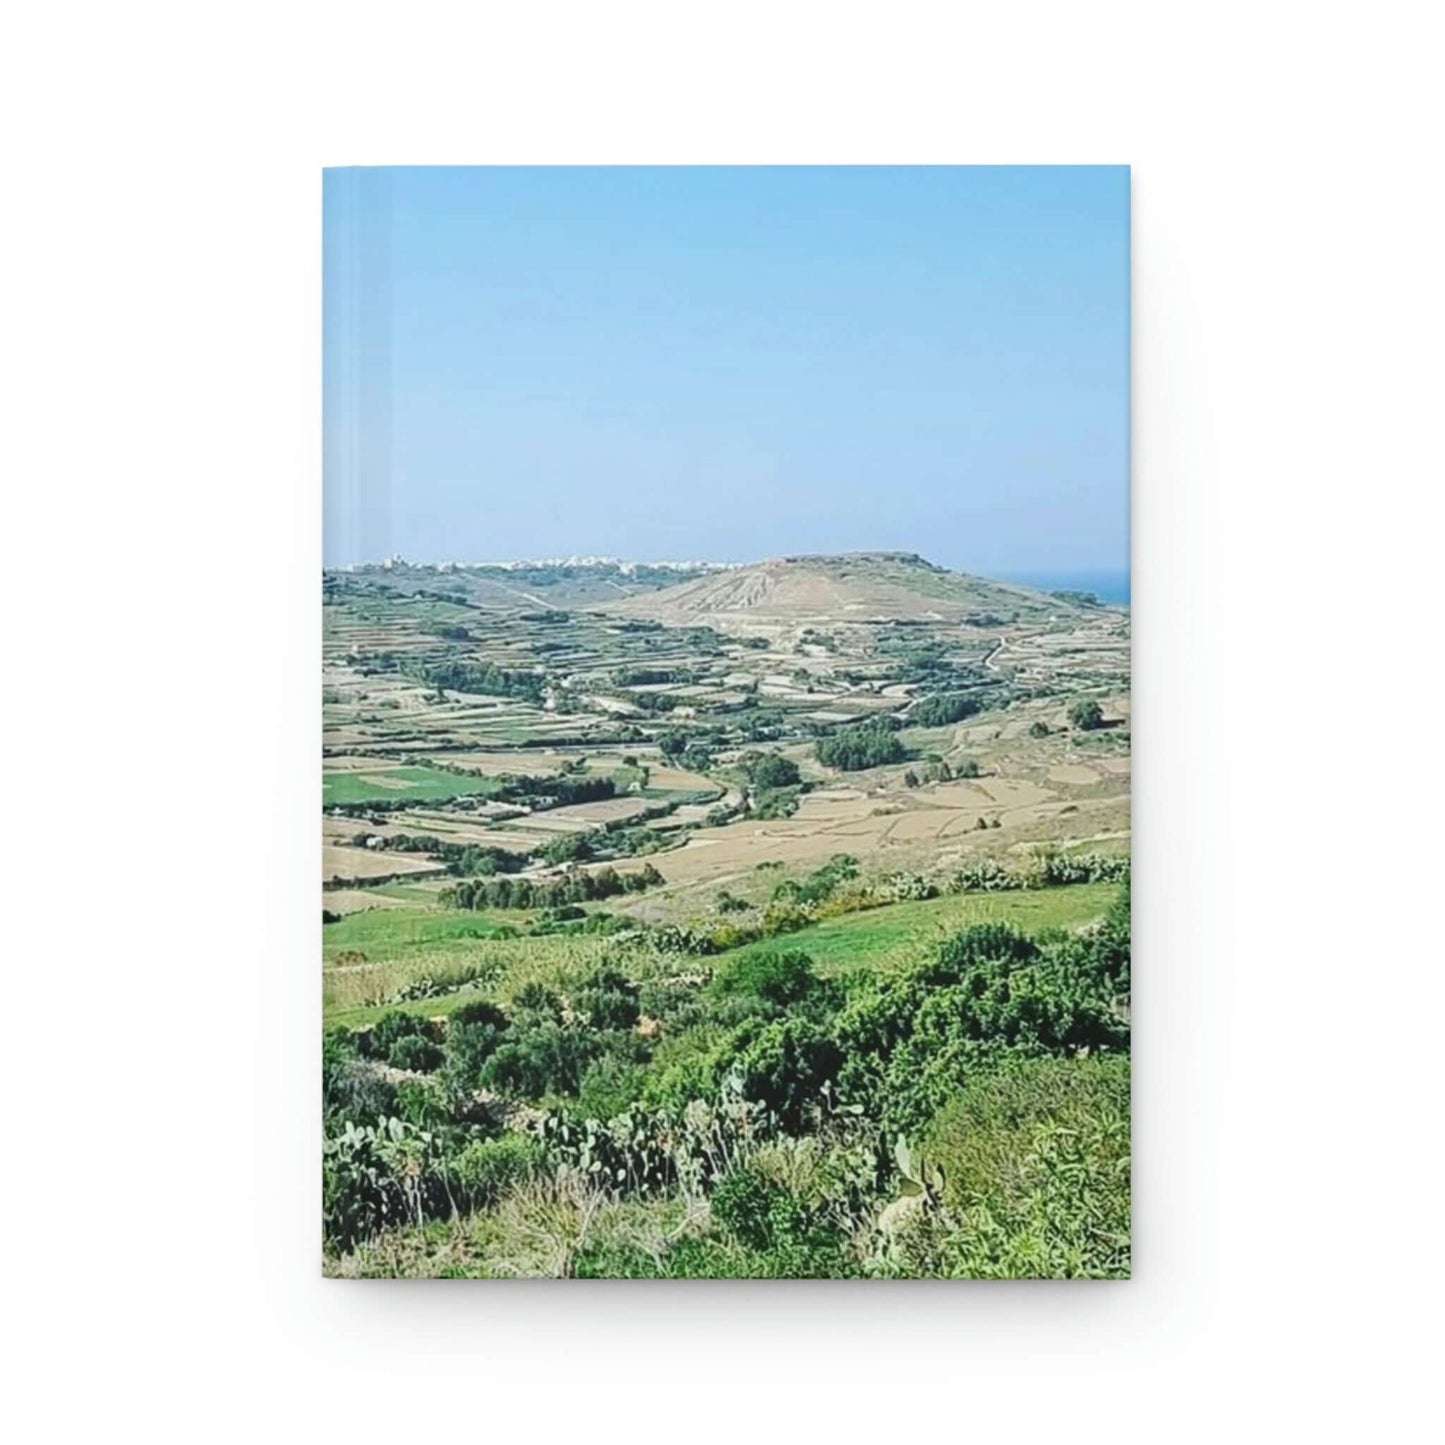 The breath taking scene | Gozo | Hardcover Journal Matte